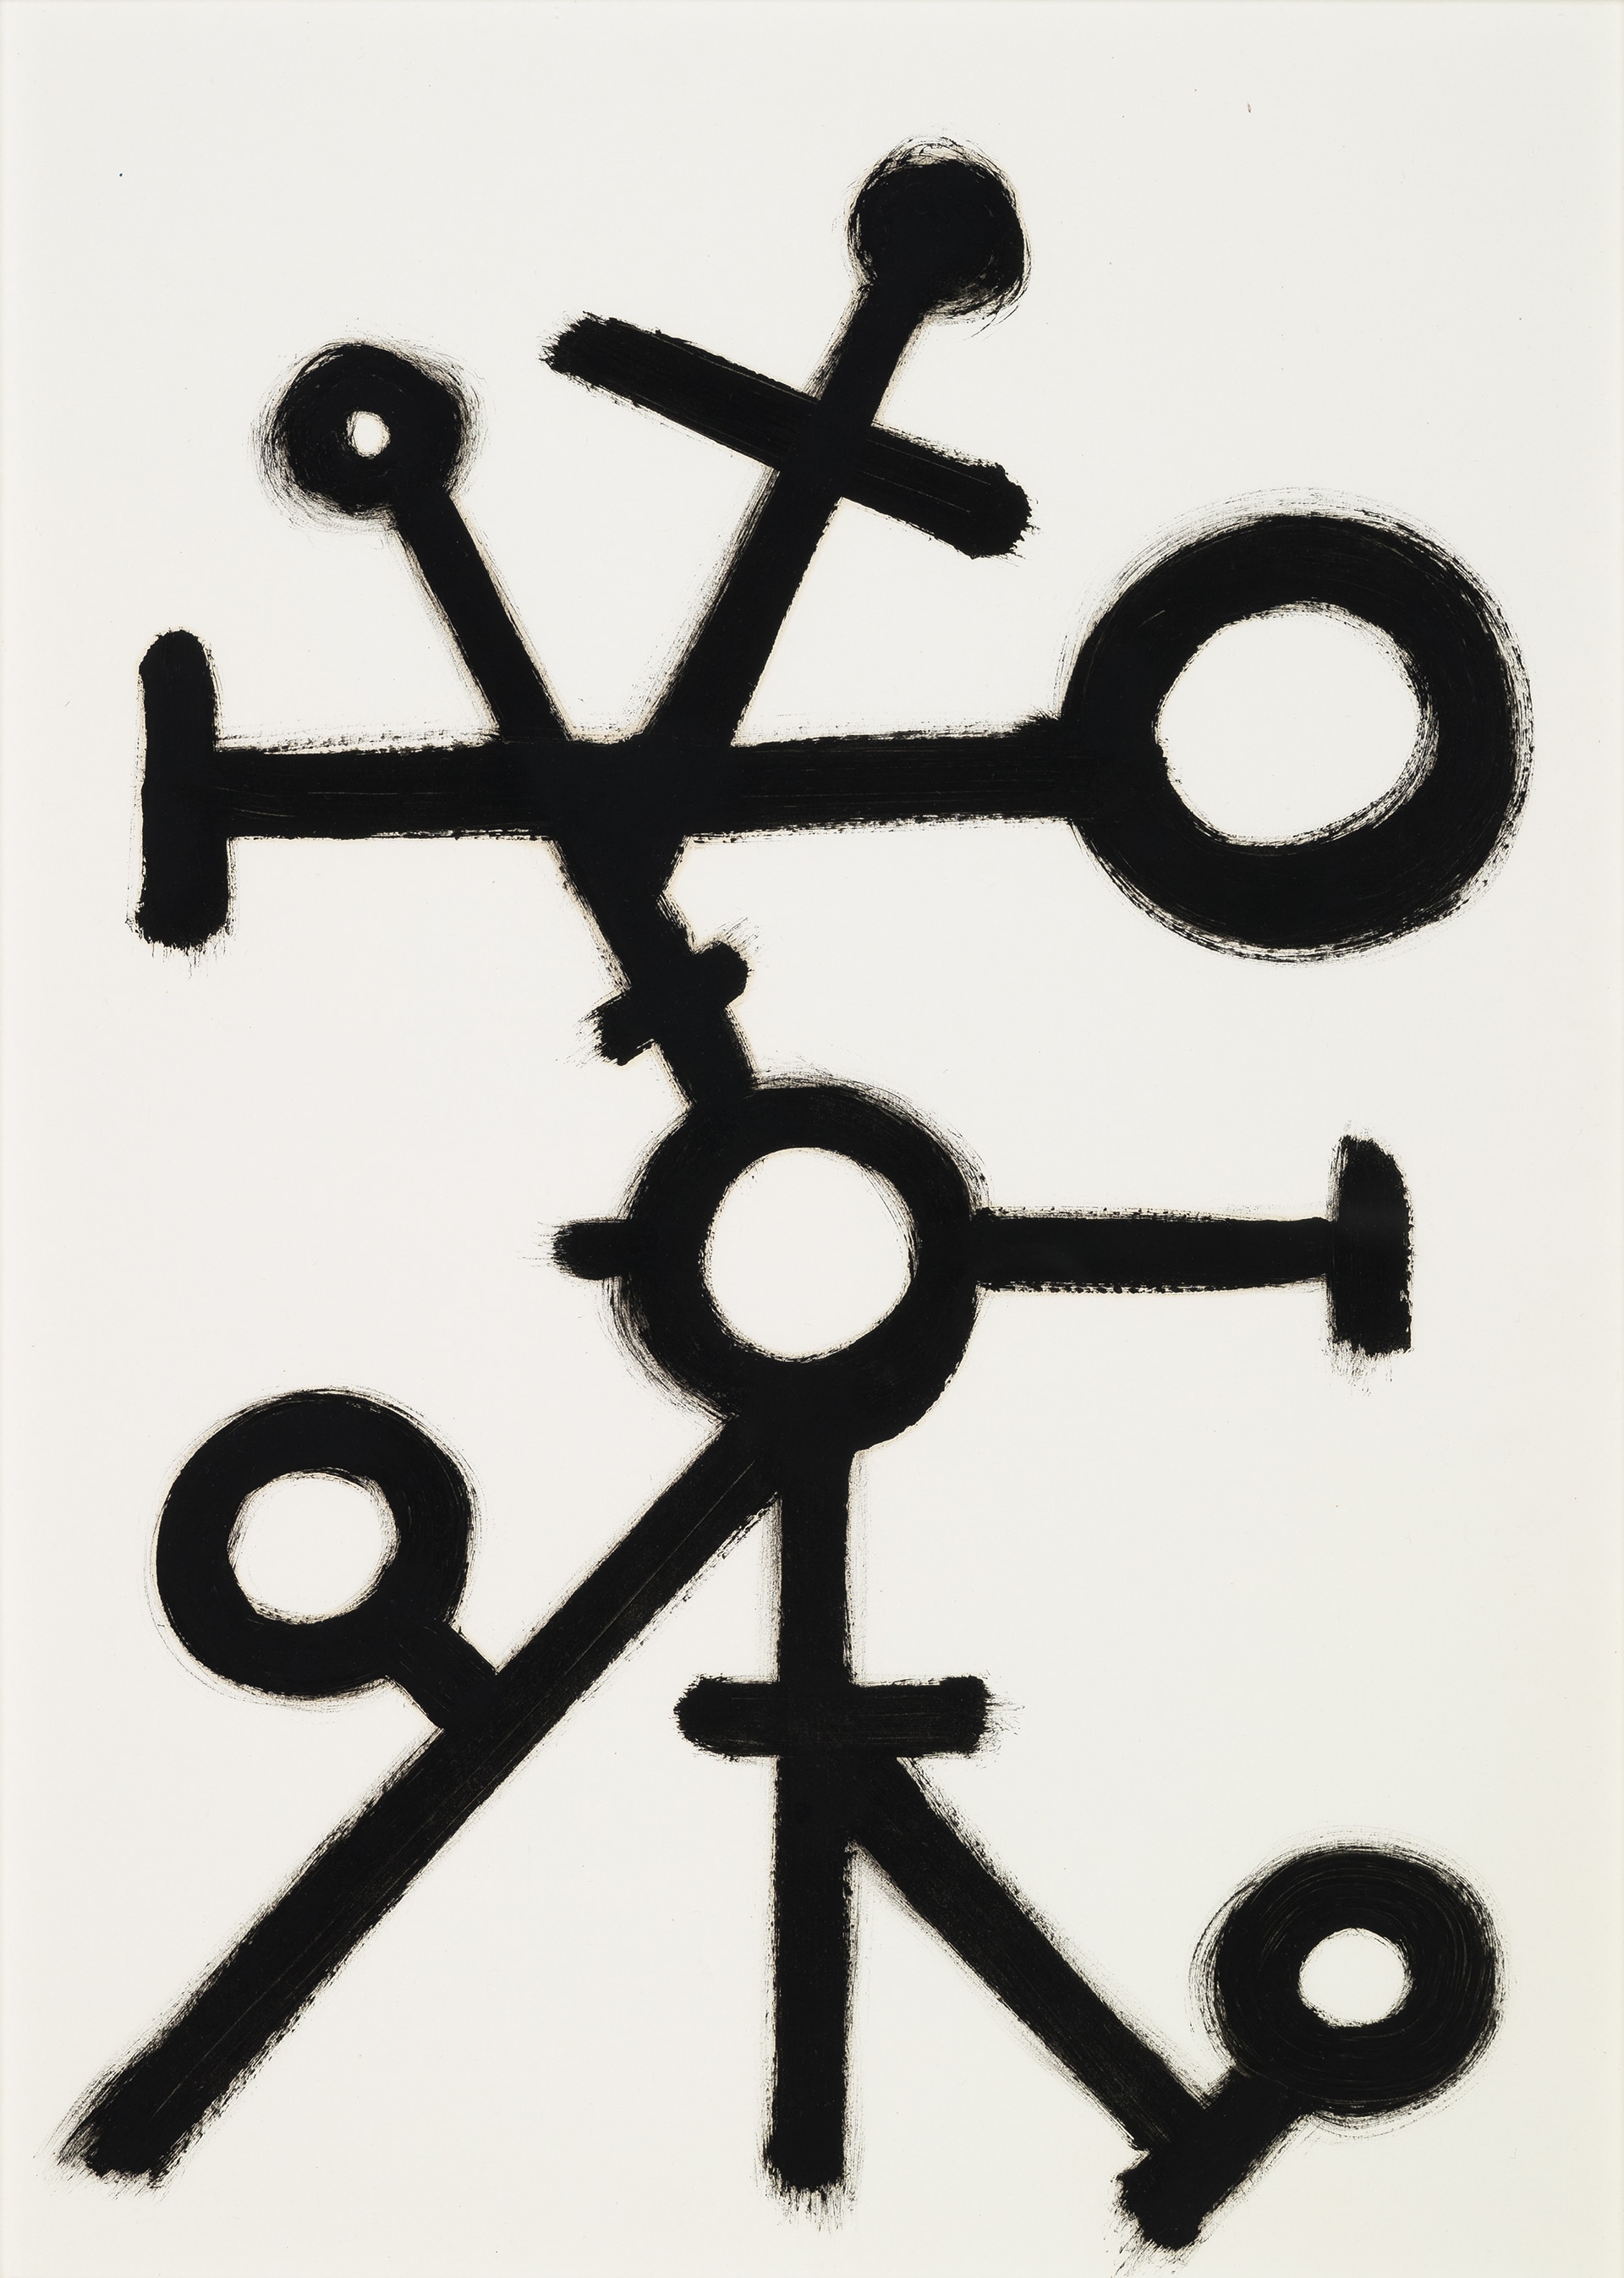 Luigi Pericle "Senza titolo", primavera 1960. China su carta, 42 x 30 cm. Collezione privata.